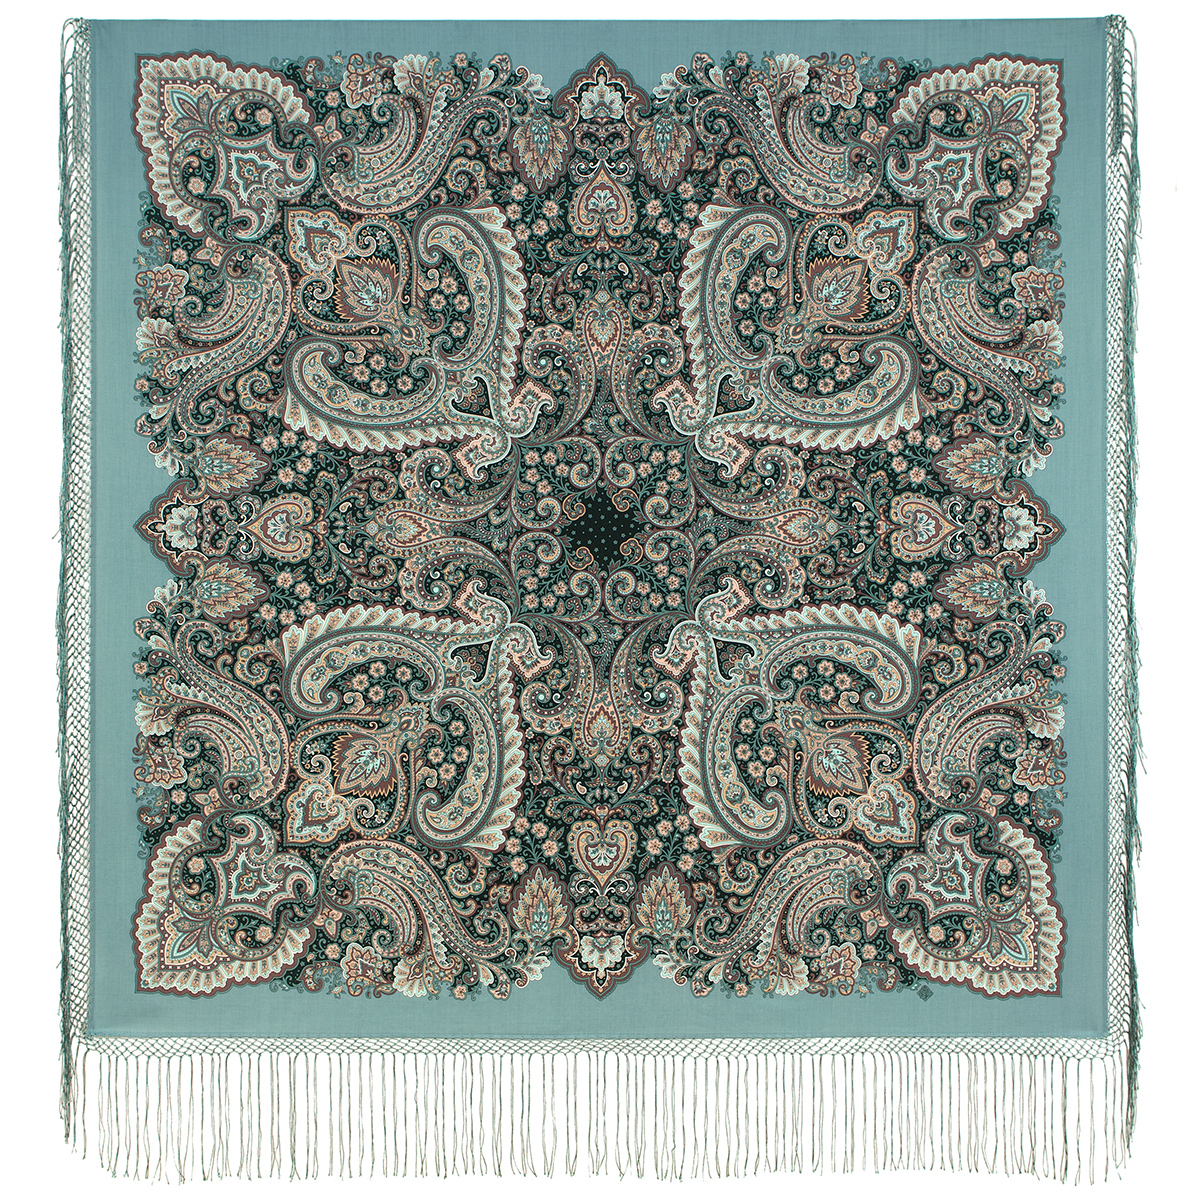 Платок женский Павловопосадский платок 1963 серо-зеленый, 148х148 см